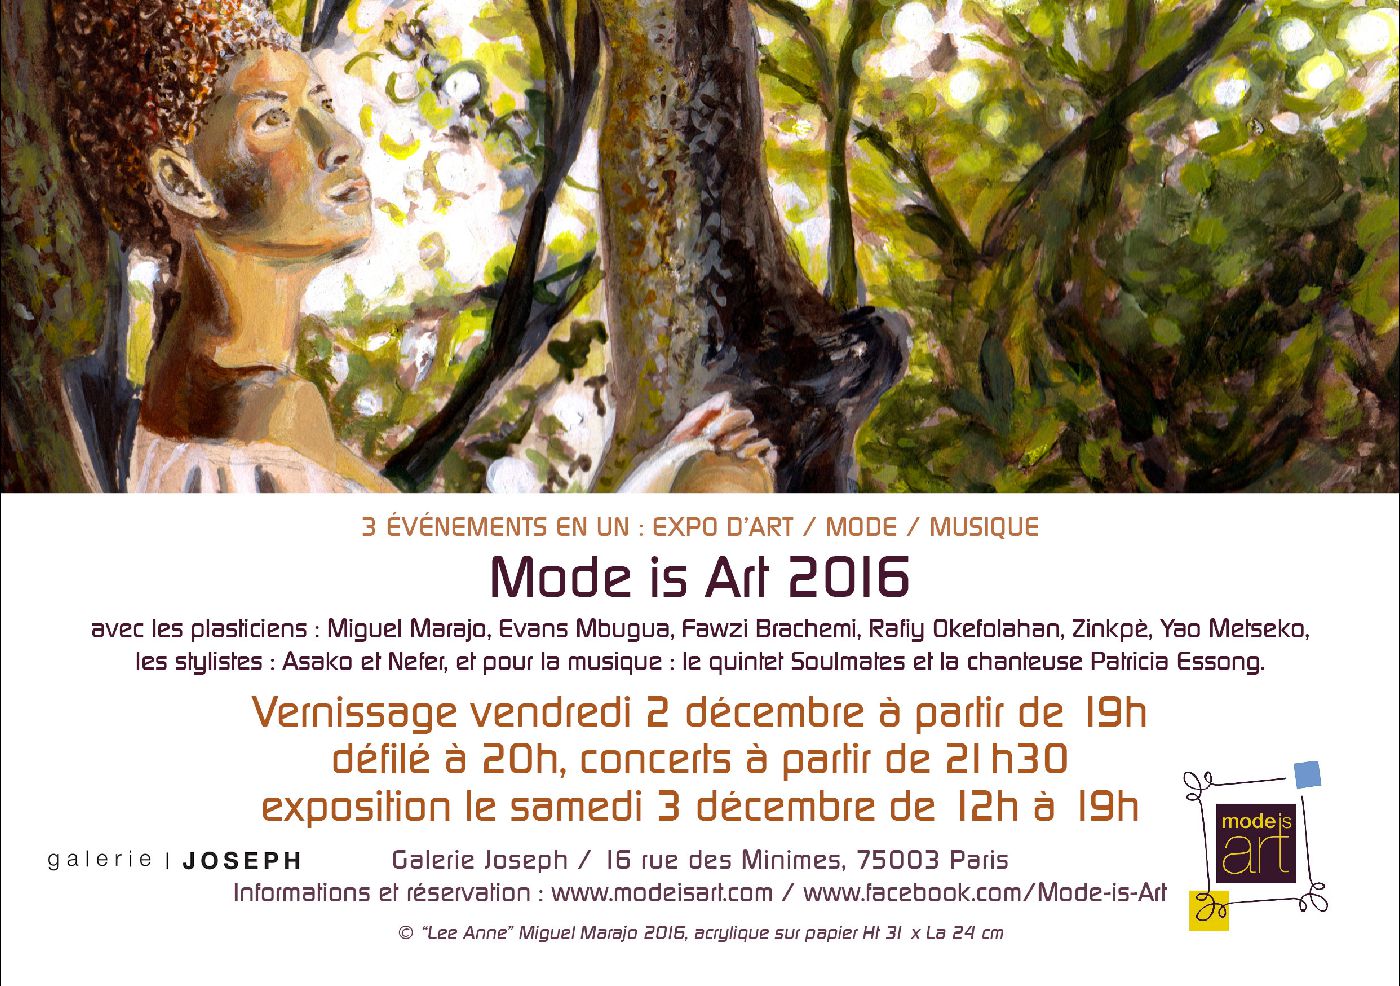 L'artiste Miguel Marajo participe à Mode is Art 2016